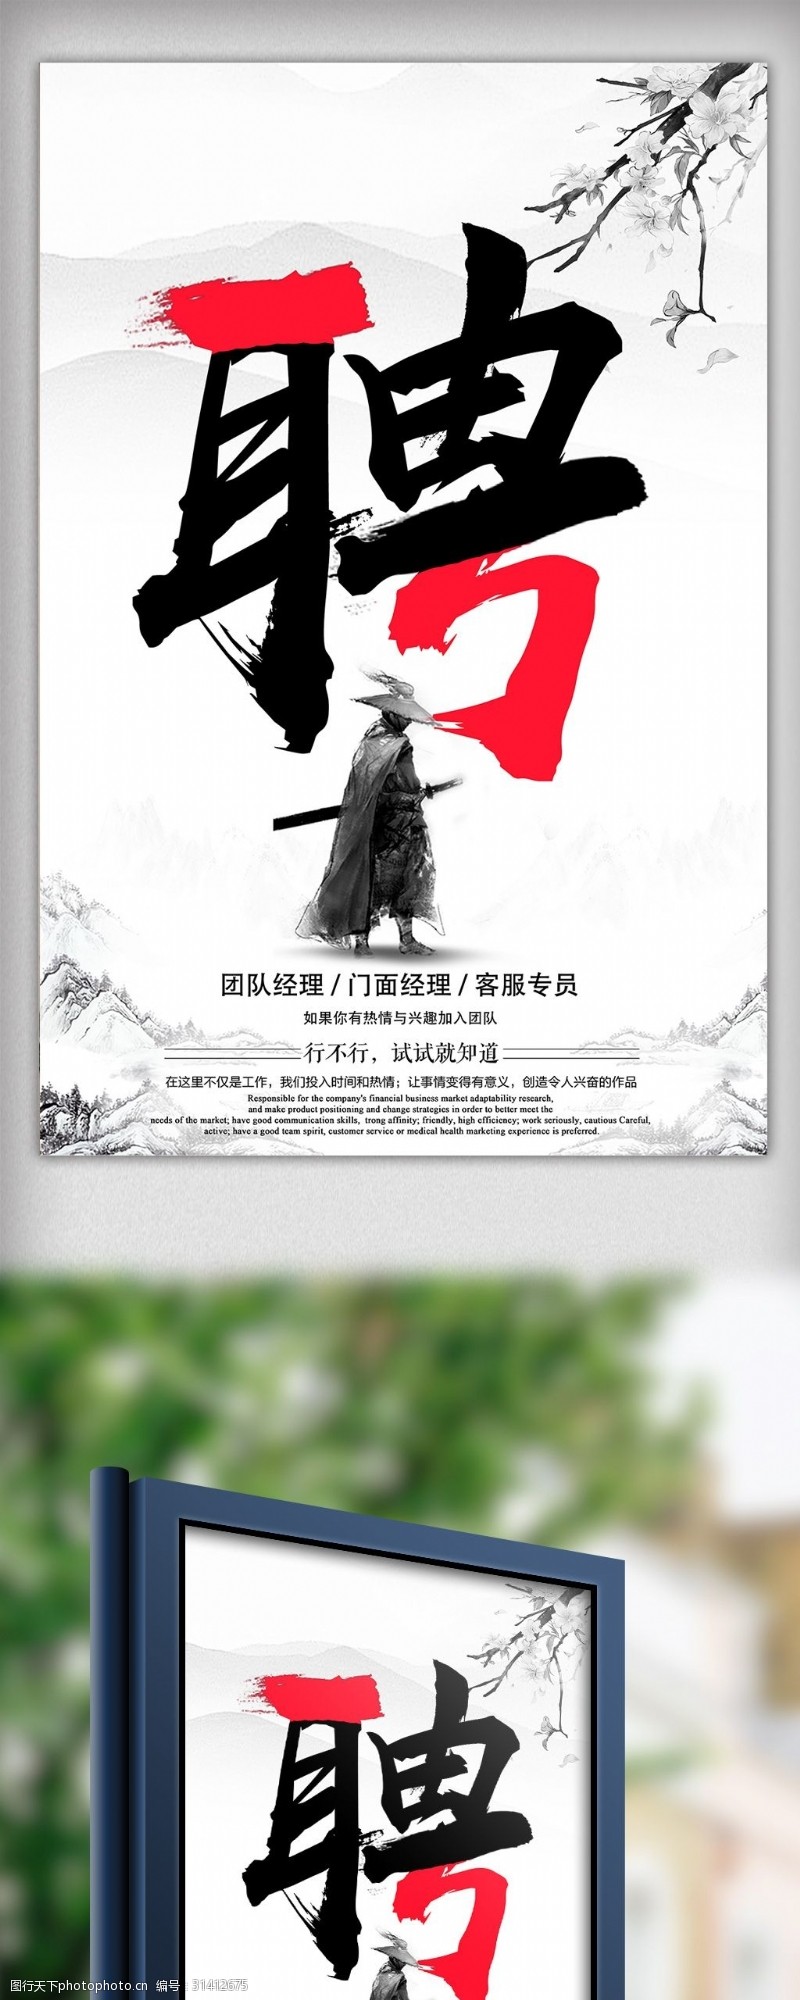 招生易拉宝中国风创意文字排版招聘海报设计模板